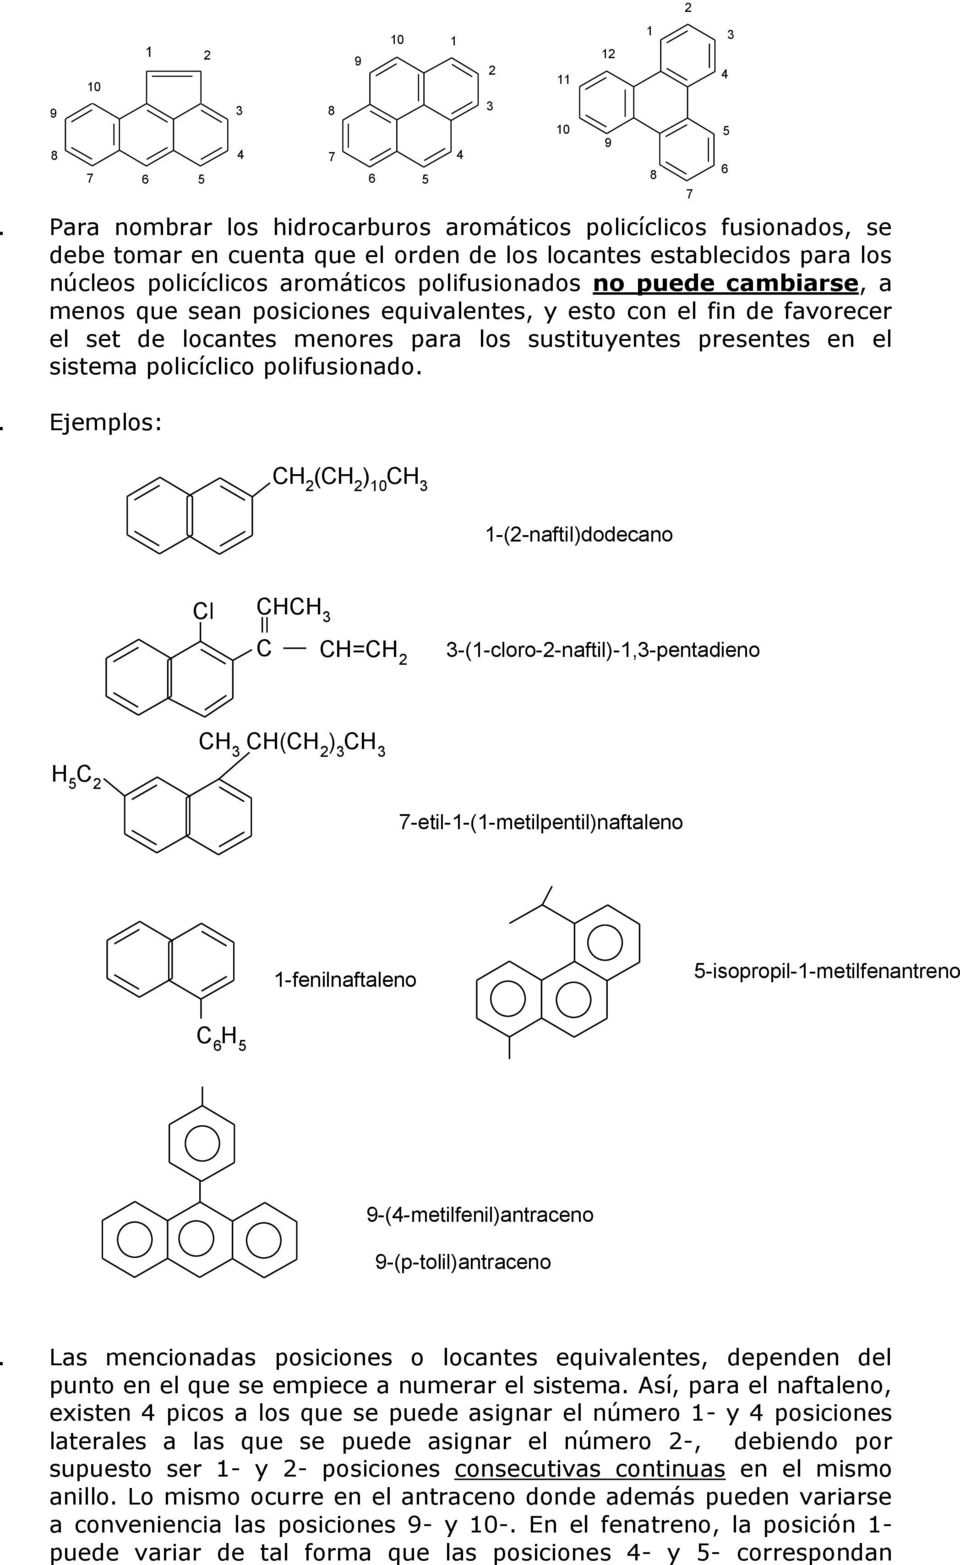 . Ejemplos: H (H ) -(-naftil)dodecano l H H=H -(-cloro--naftil)-,-pentadieno H(H ) -etil--(-metilpentil)naftaleno -fenilnaftaleno -isopropil--metilfenantreno -(-metilfenil)antraceno